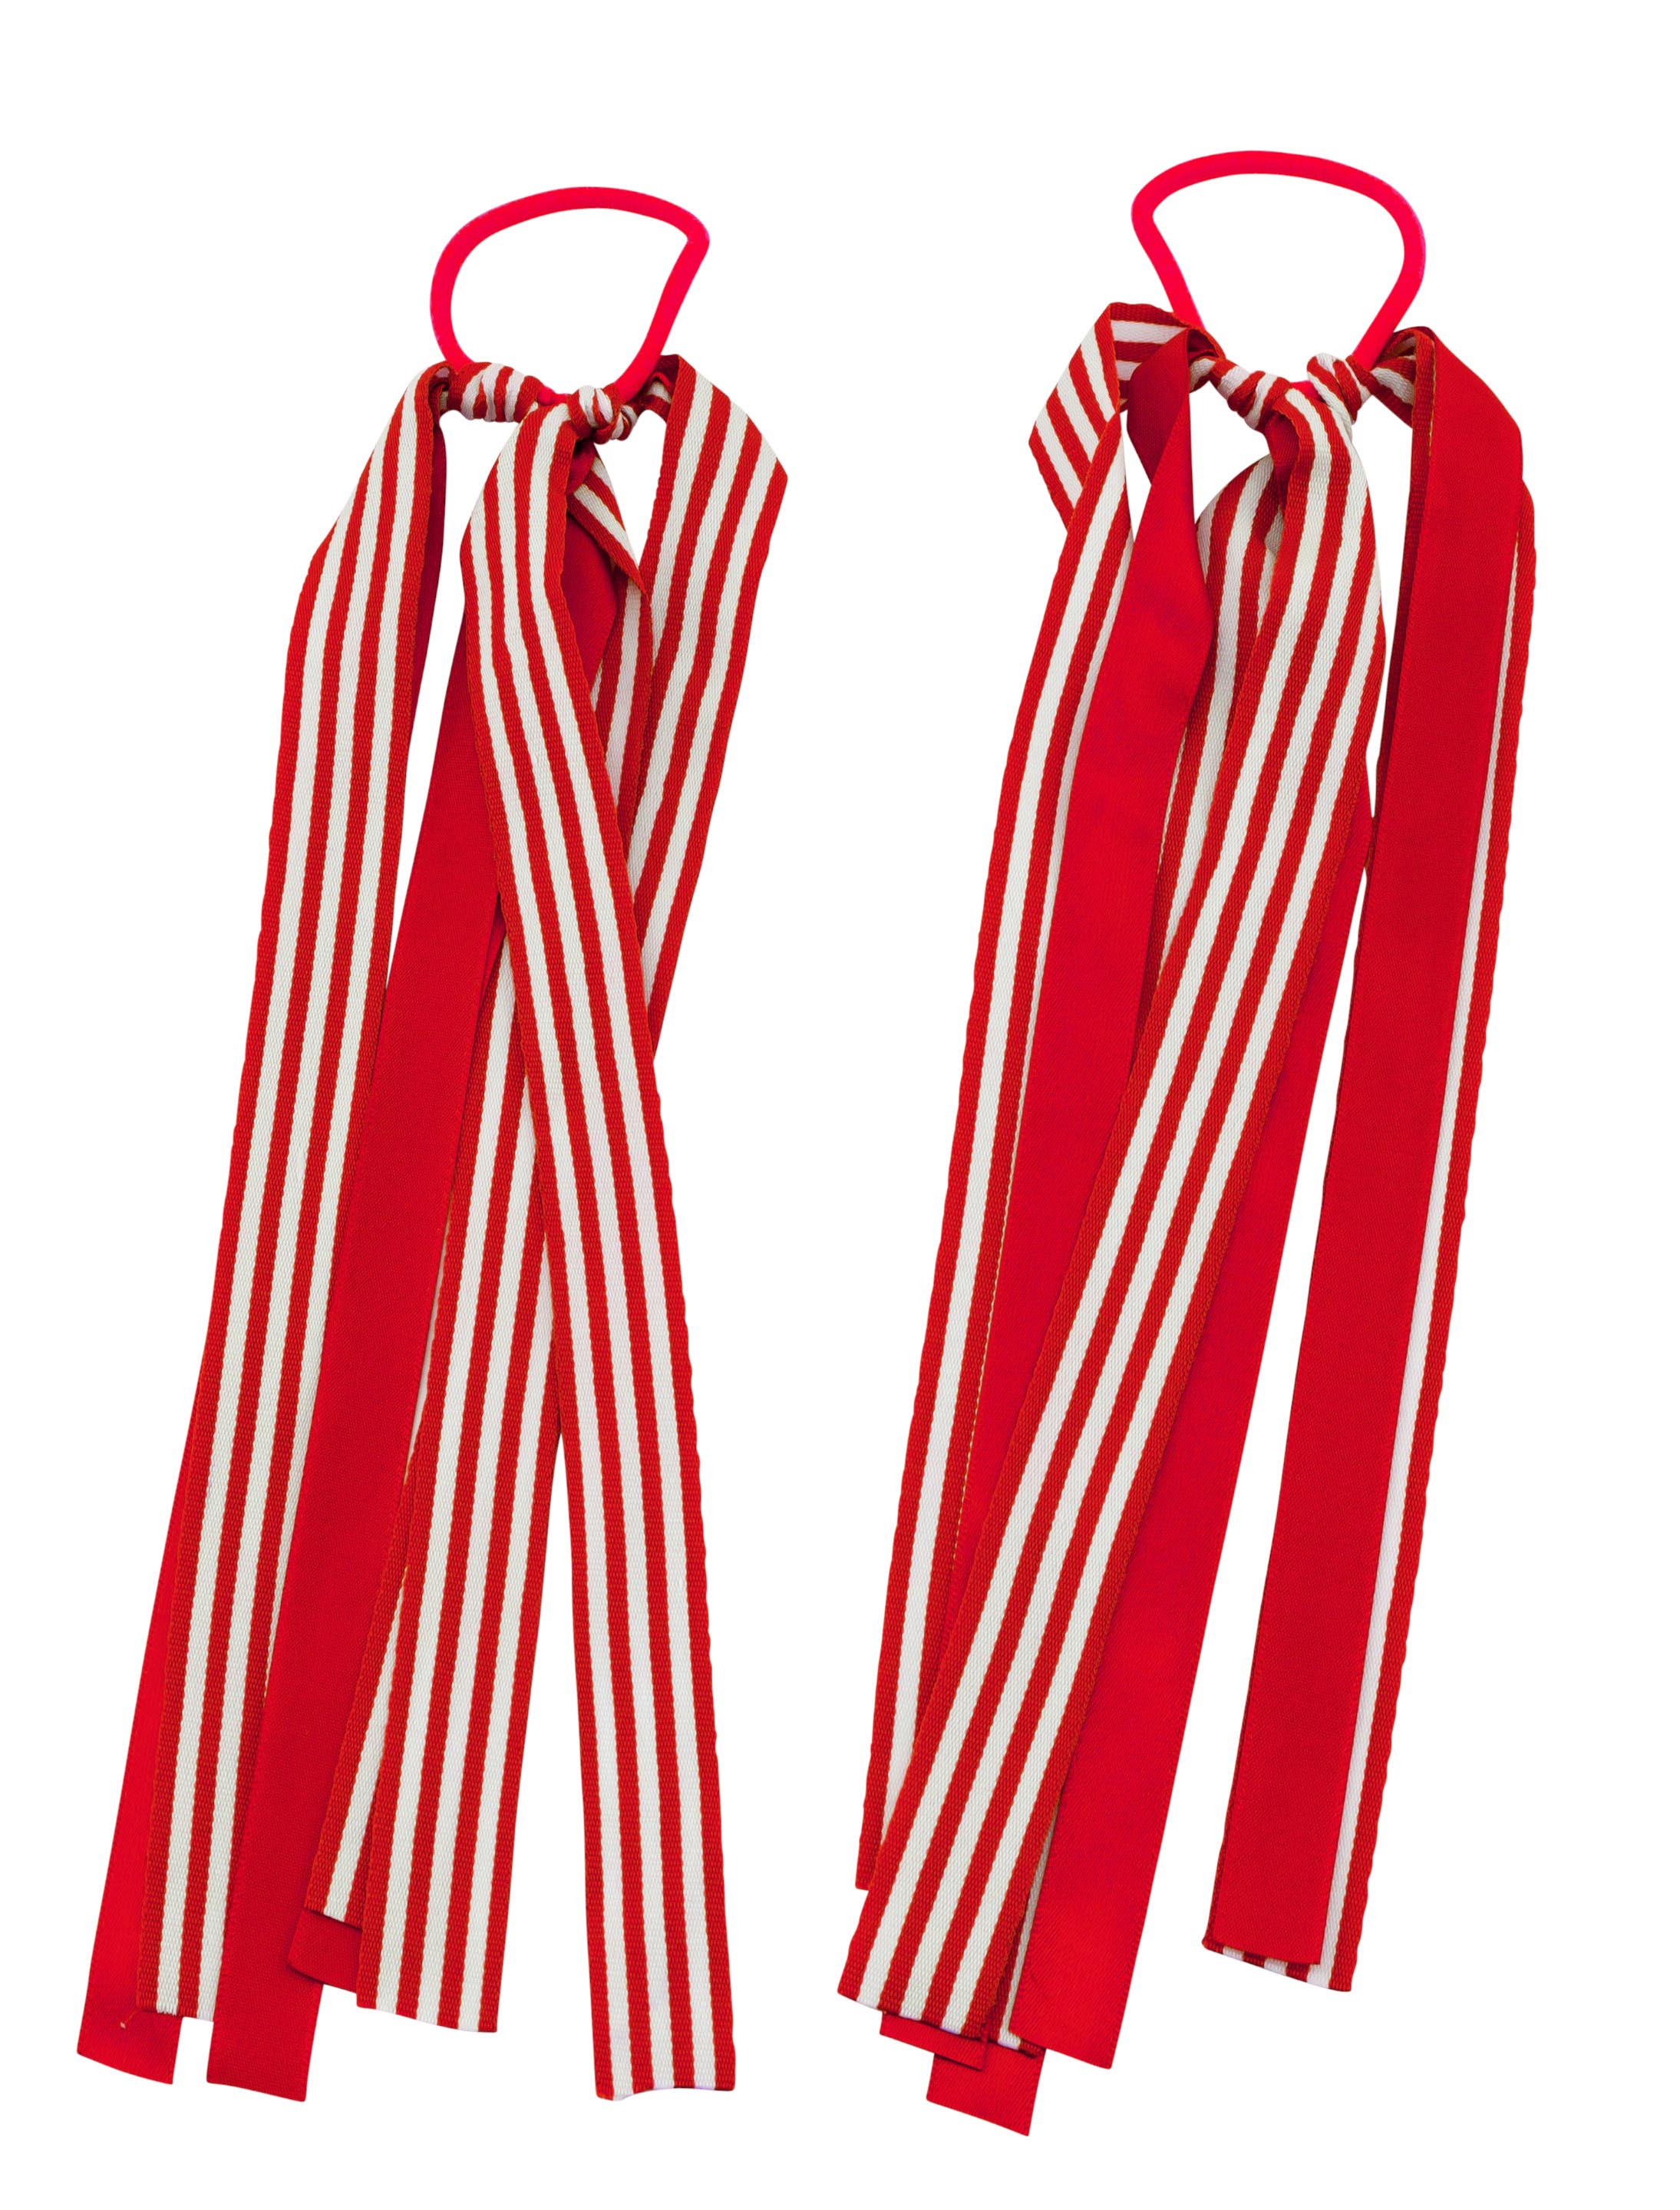 Haargummis mit Bändern gestreift rot/weiß